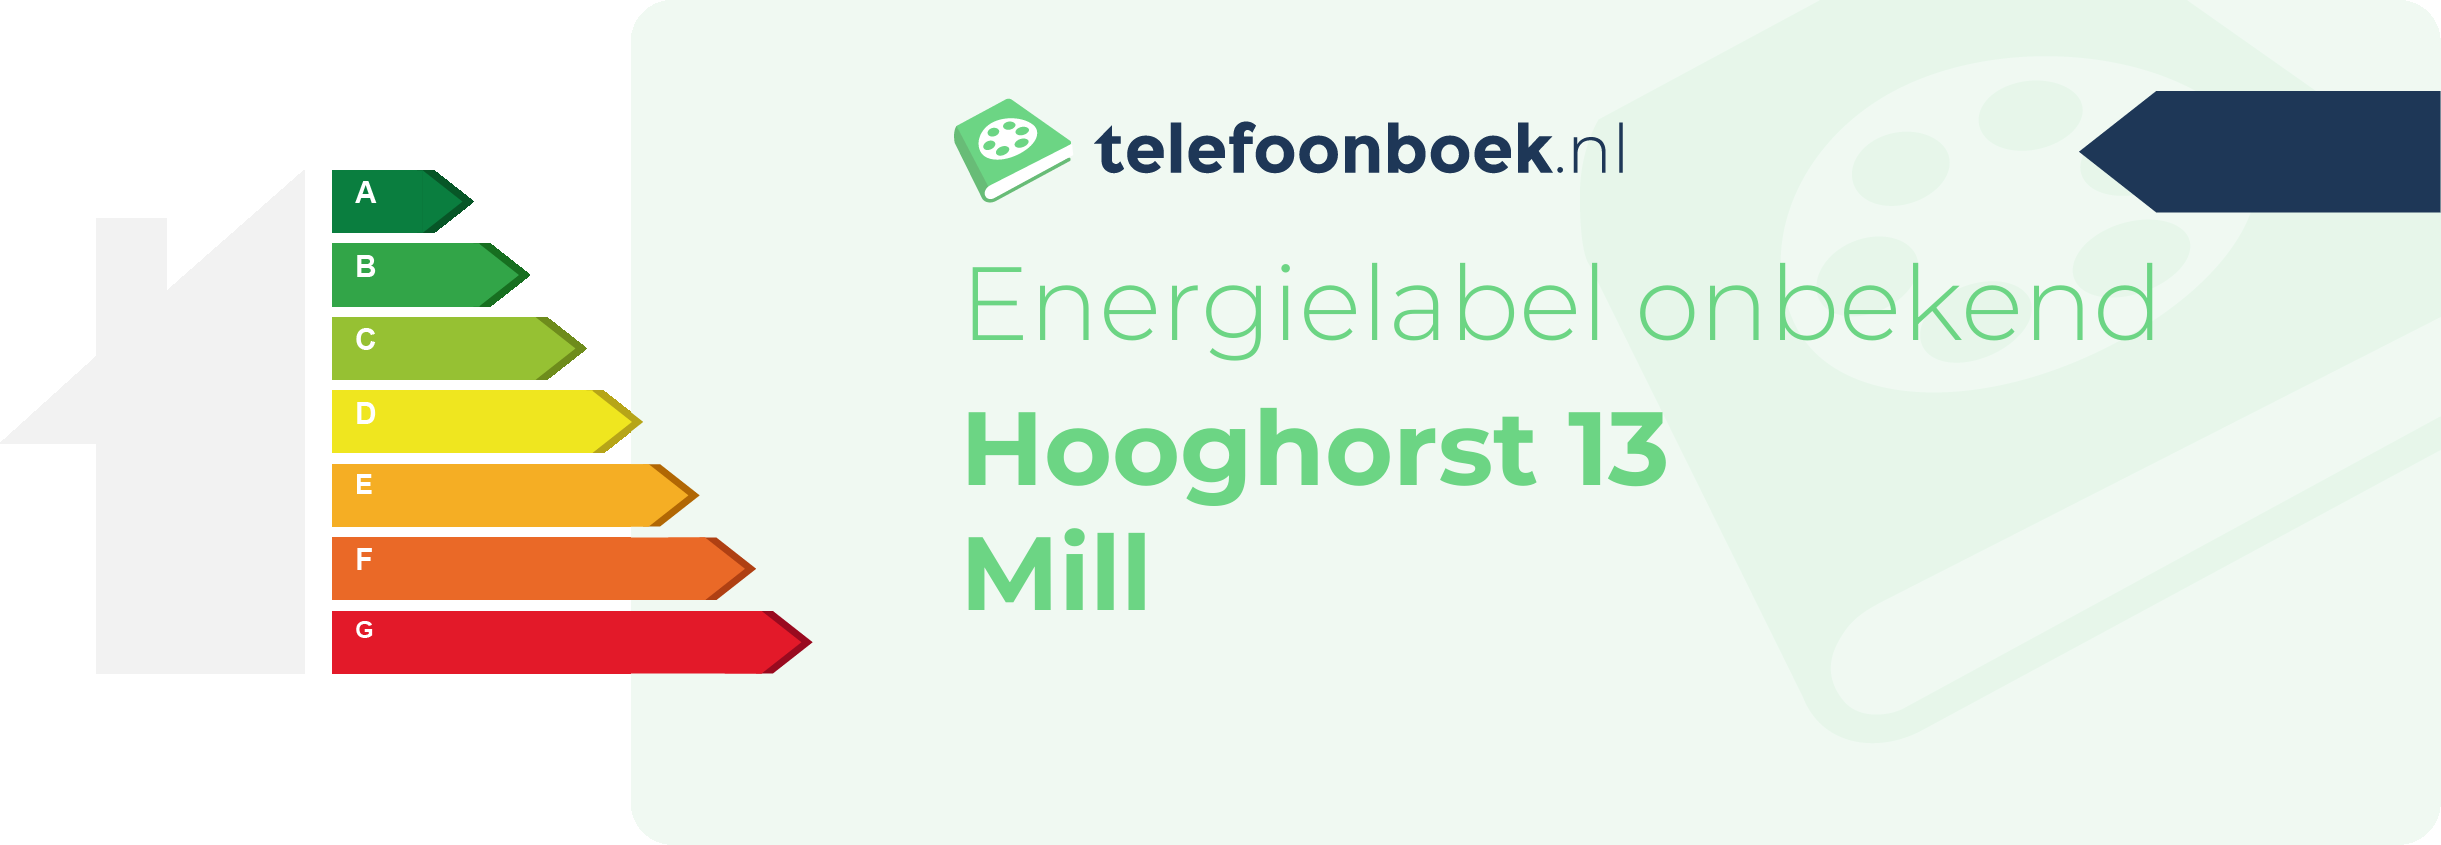 Energielabel Hooghorst 13 Mill